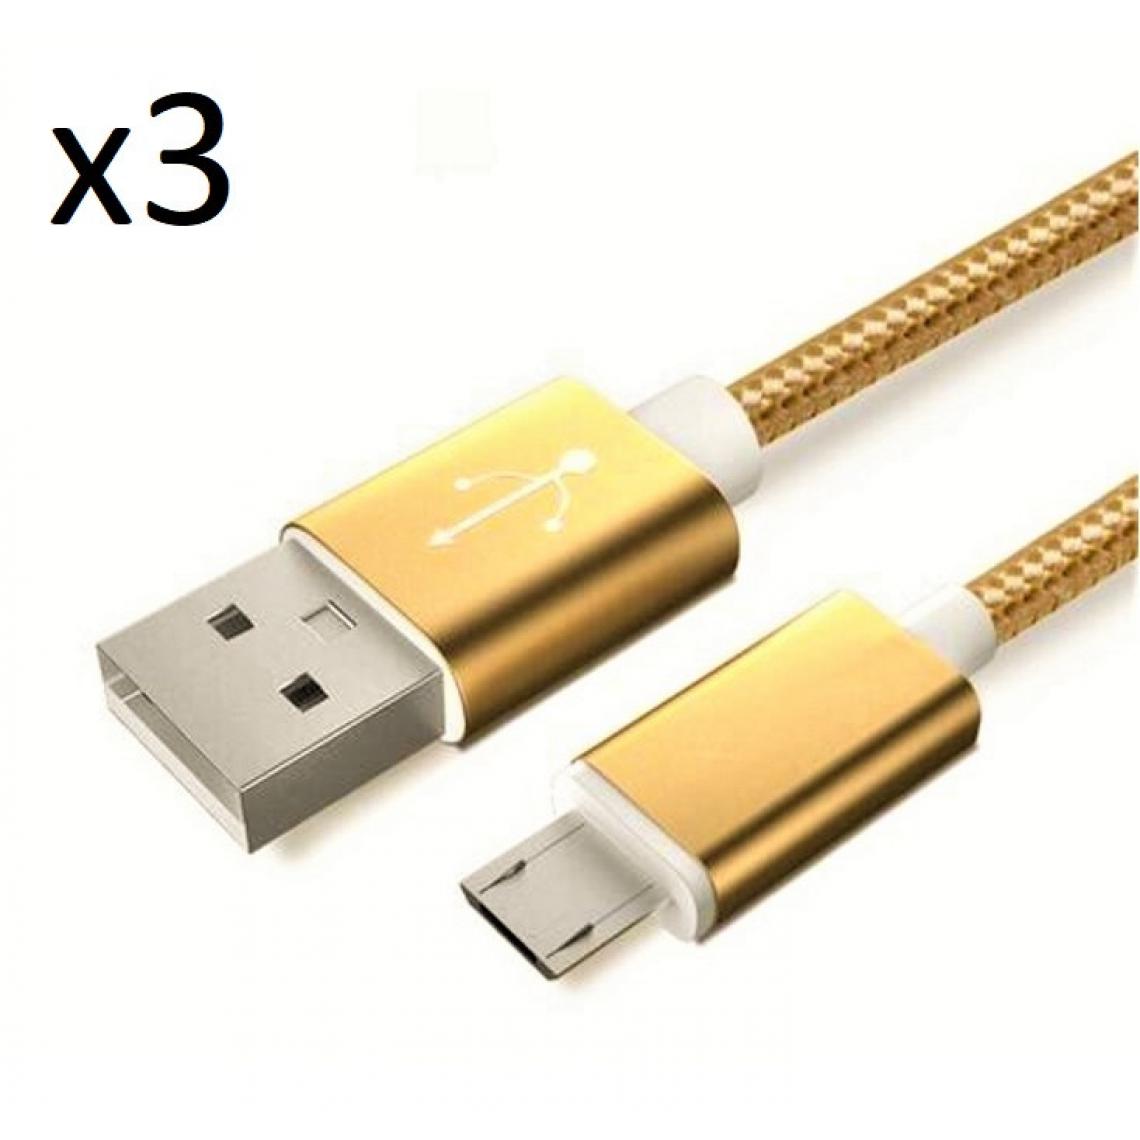 Shot - Pack de 3 Cables Metal Nylon Micro USB pour "SAMSUNG Galaxy A01" Smartphone Android Chargeur (OR) - Chargeur secteur téléphone